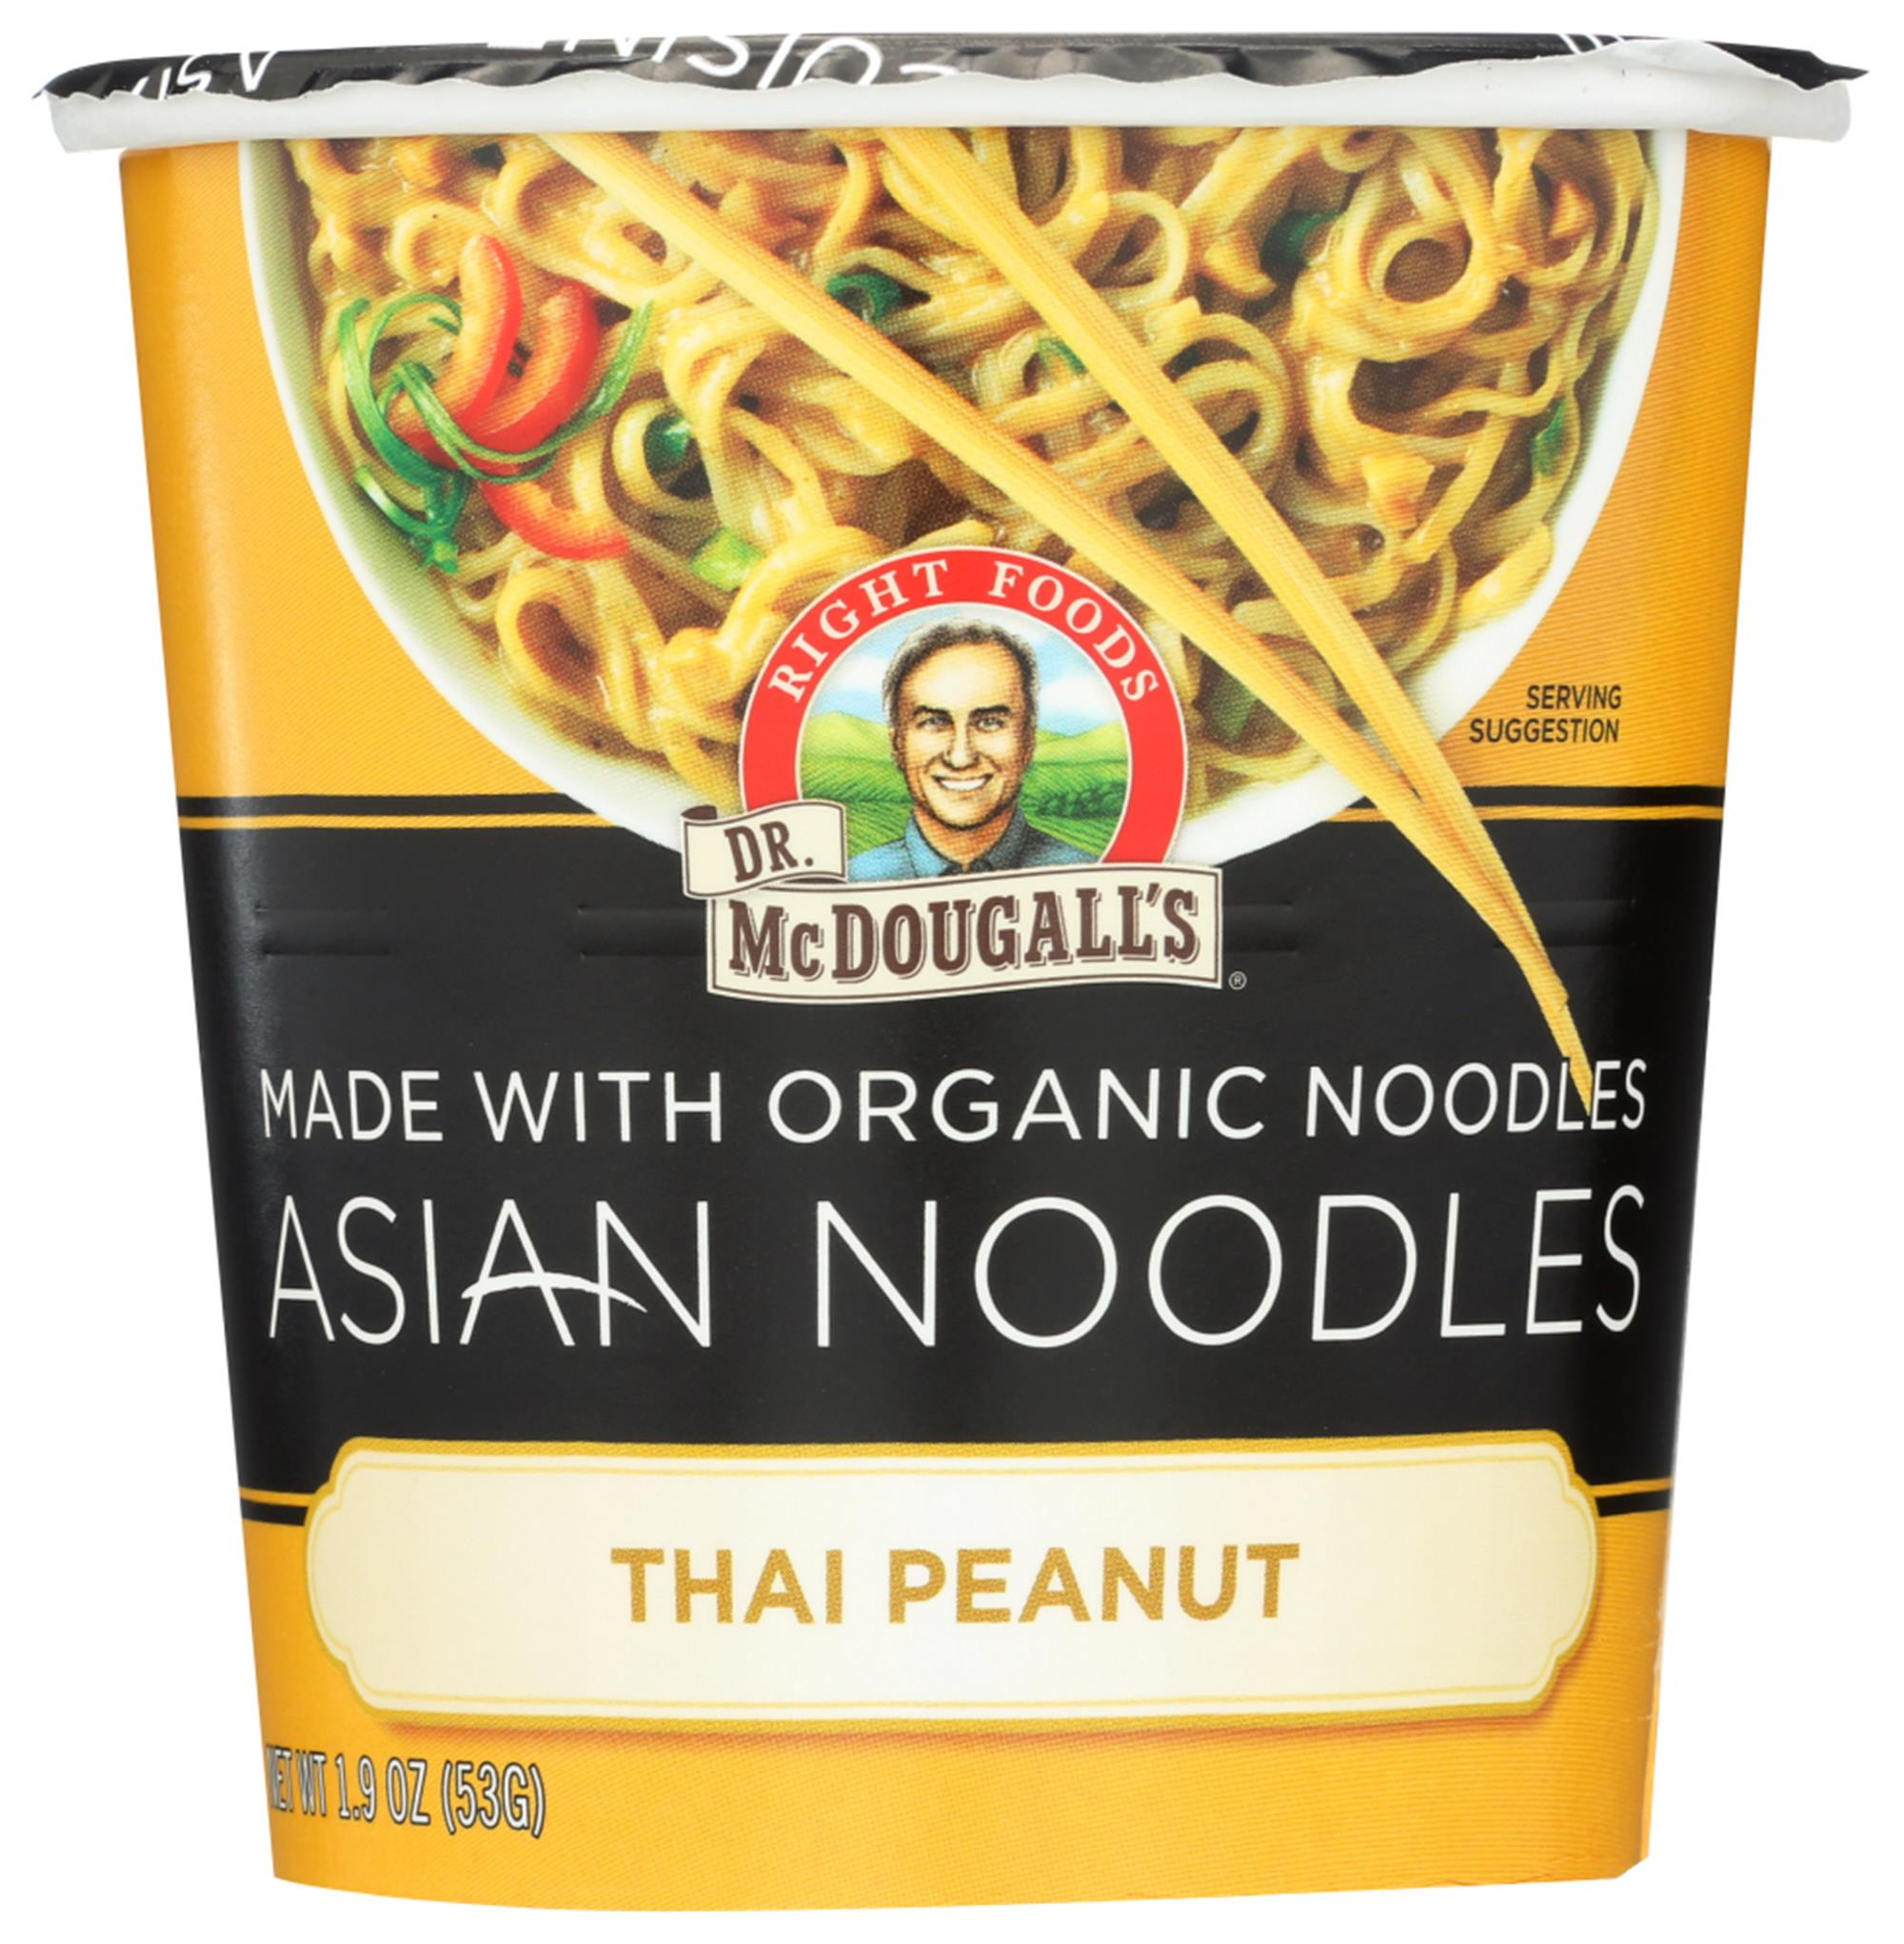 Asian Noodles Walmart
 Dr Mcdougall’S Asian Noodle Soup 1 9 Oz Walmart